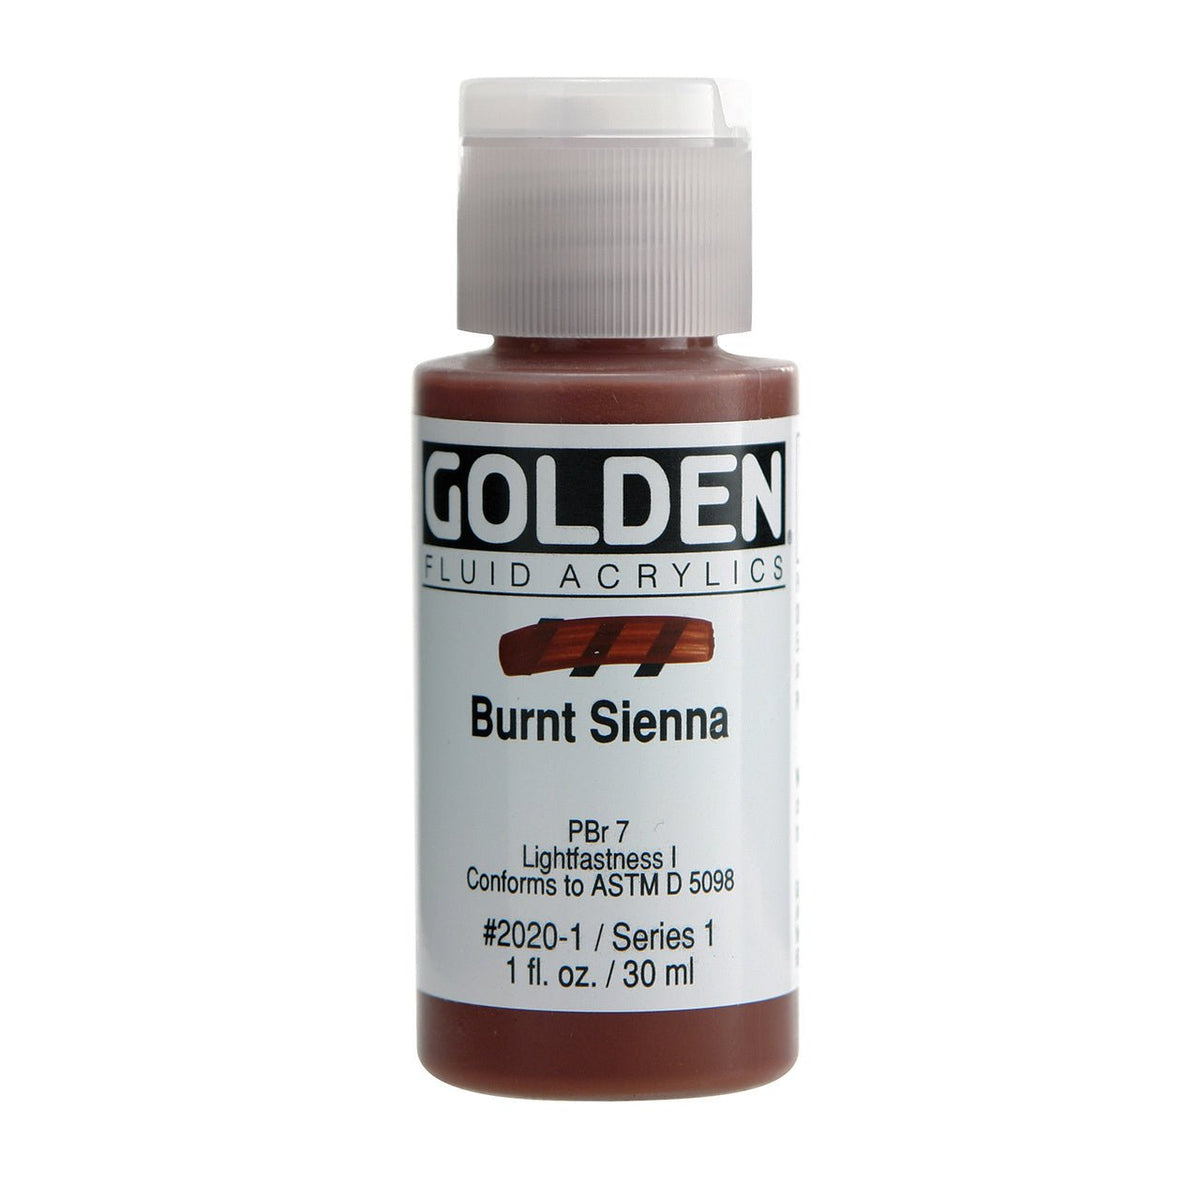 Golden Fluid Acrylic Burnt Sienna 1 oz - merriartist.com